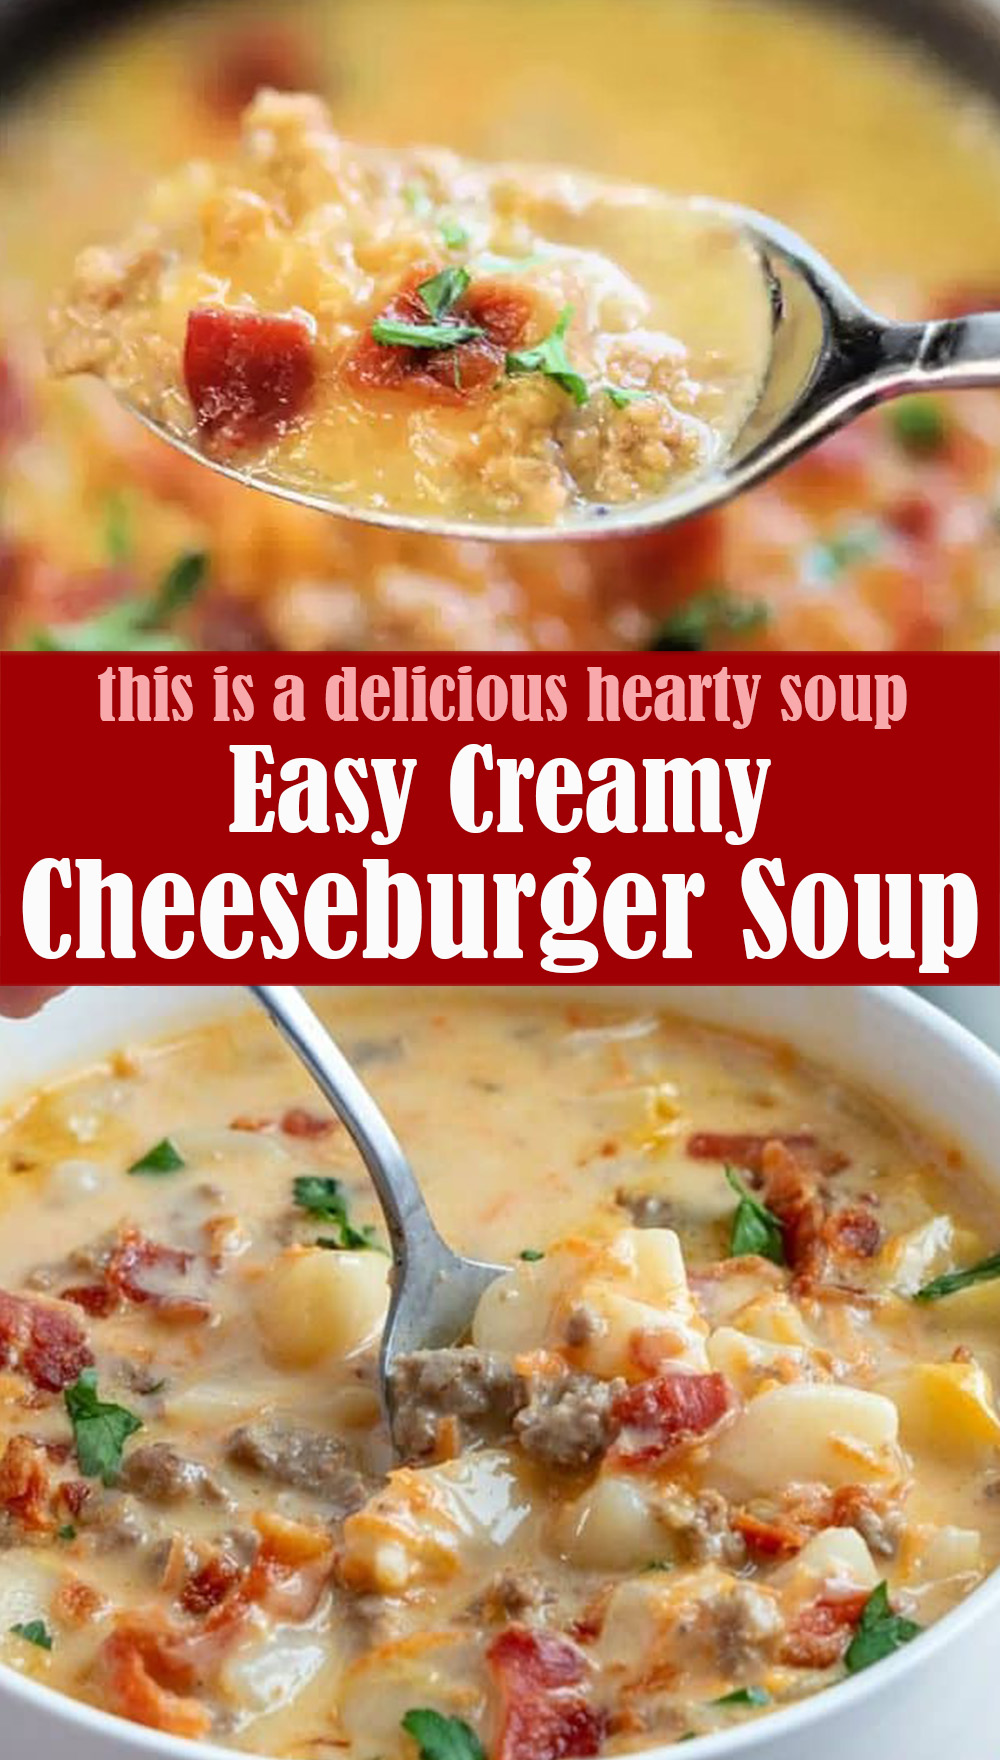 Easy Creamy Cheeseburger Soup Recipe